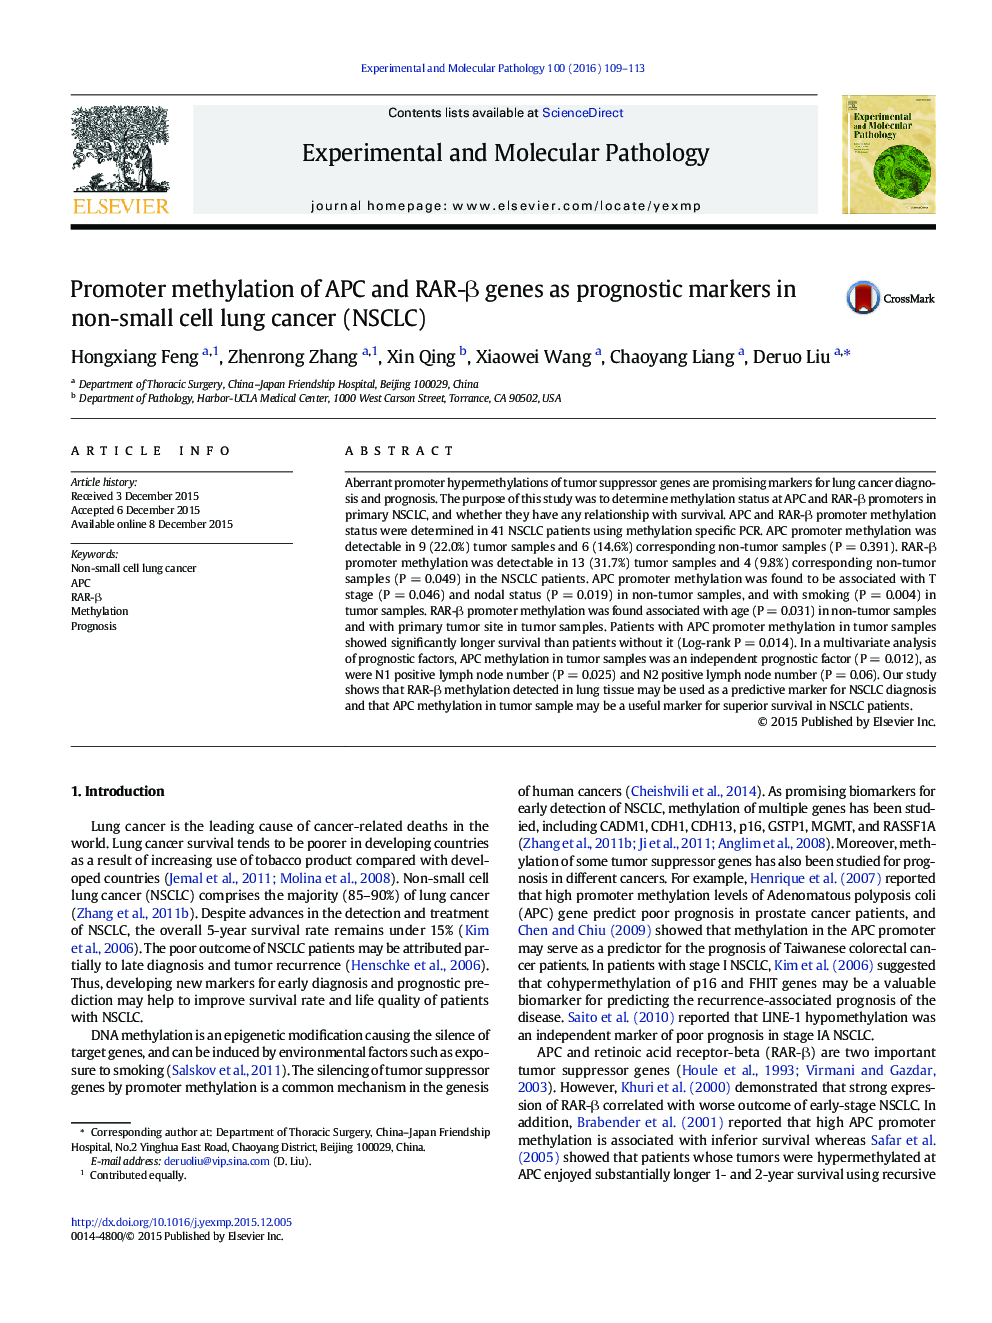 متیلاسیون پروموتور ژن های APC و RAR-β به عنوان مارکرهای پیش آگهی در سرطان ریه سلول غیرکوچک (NSCLC)